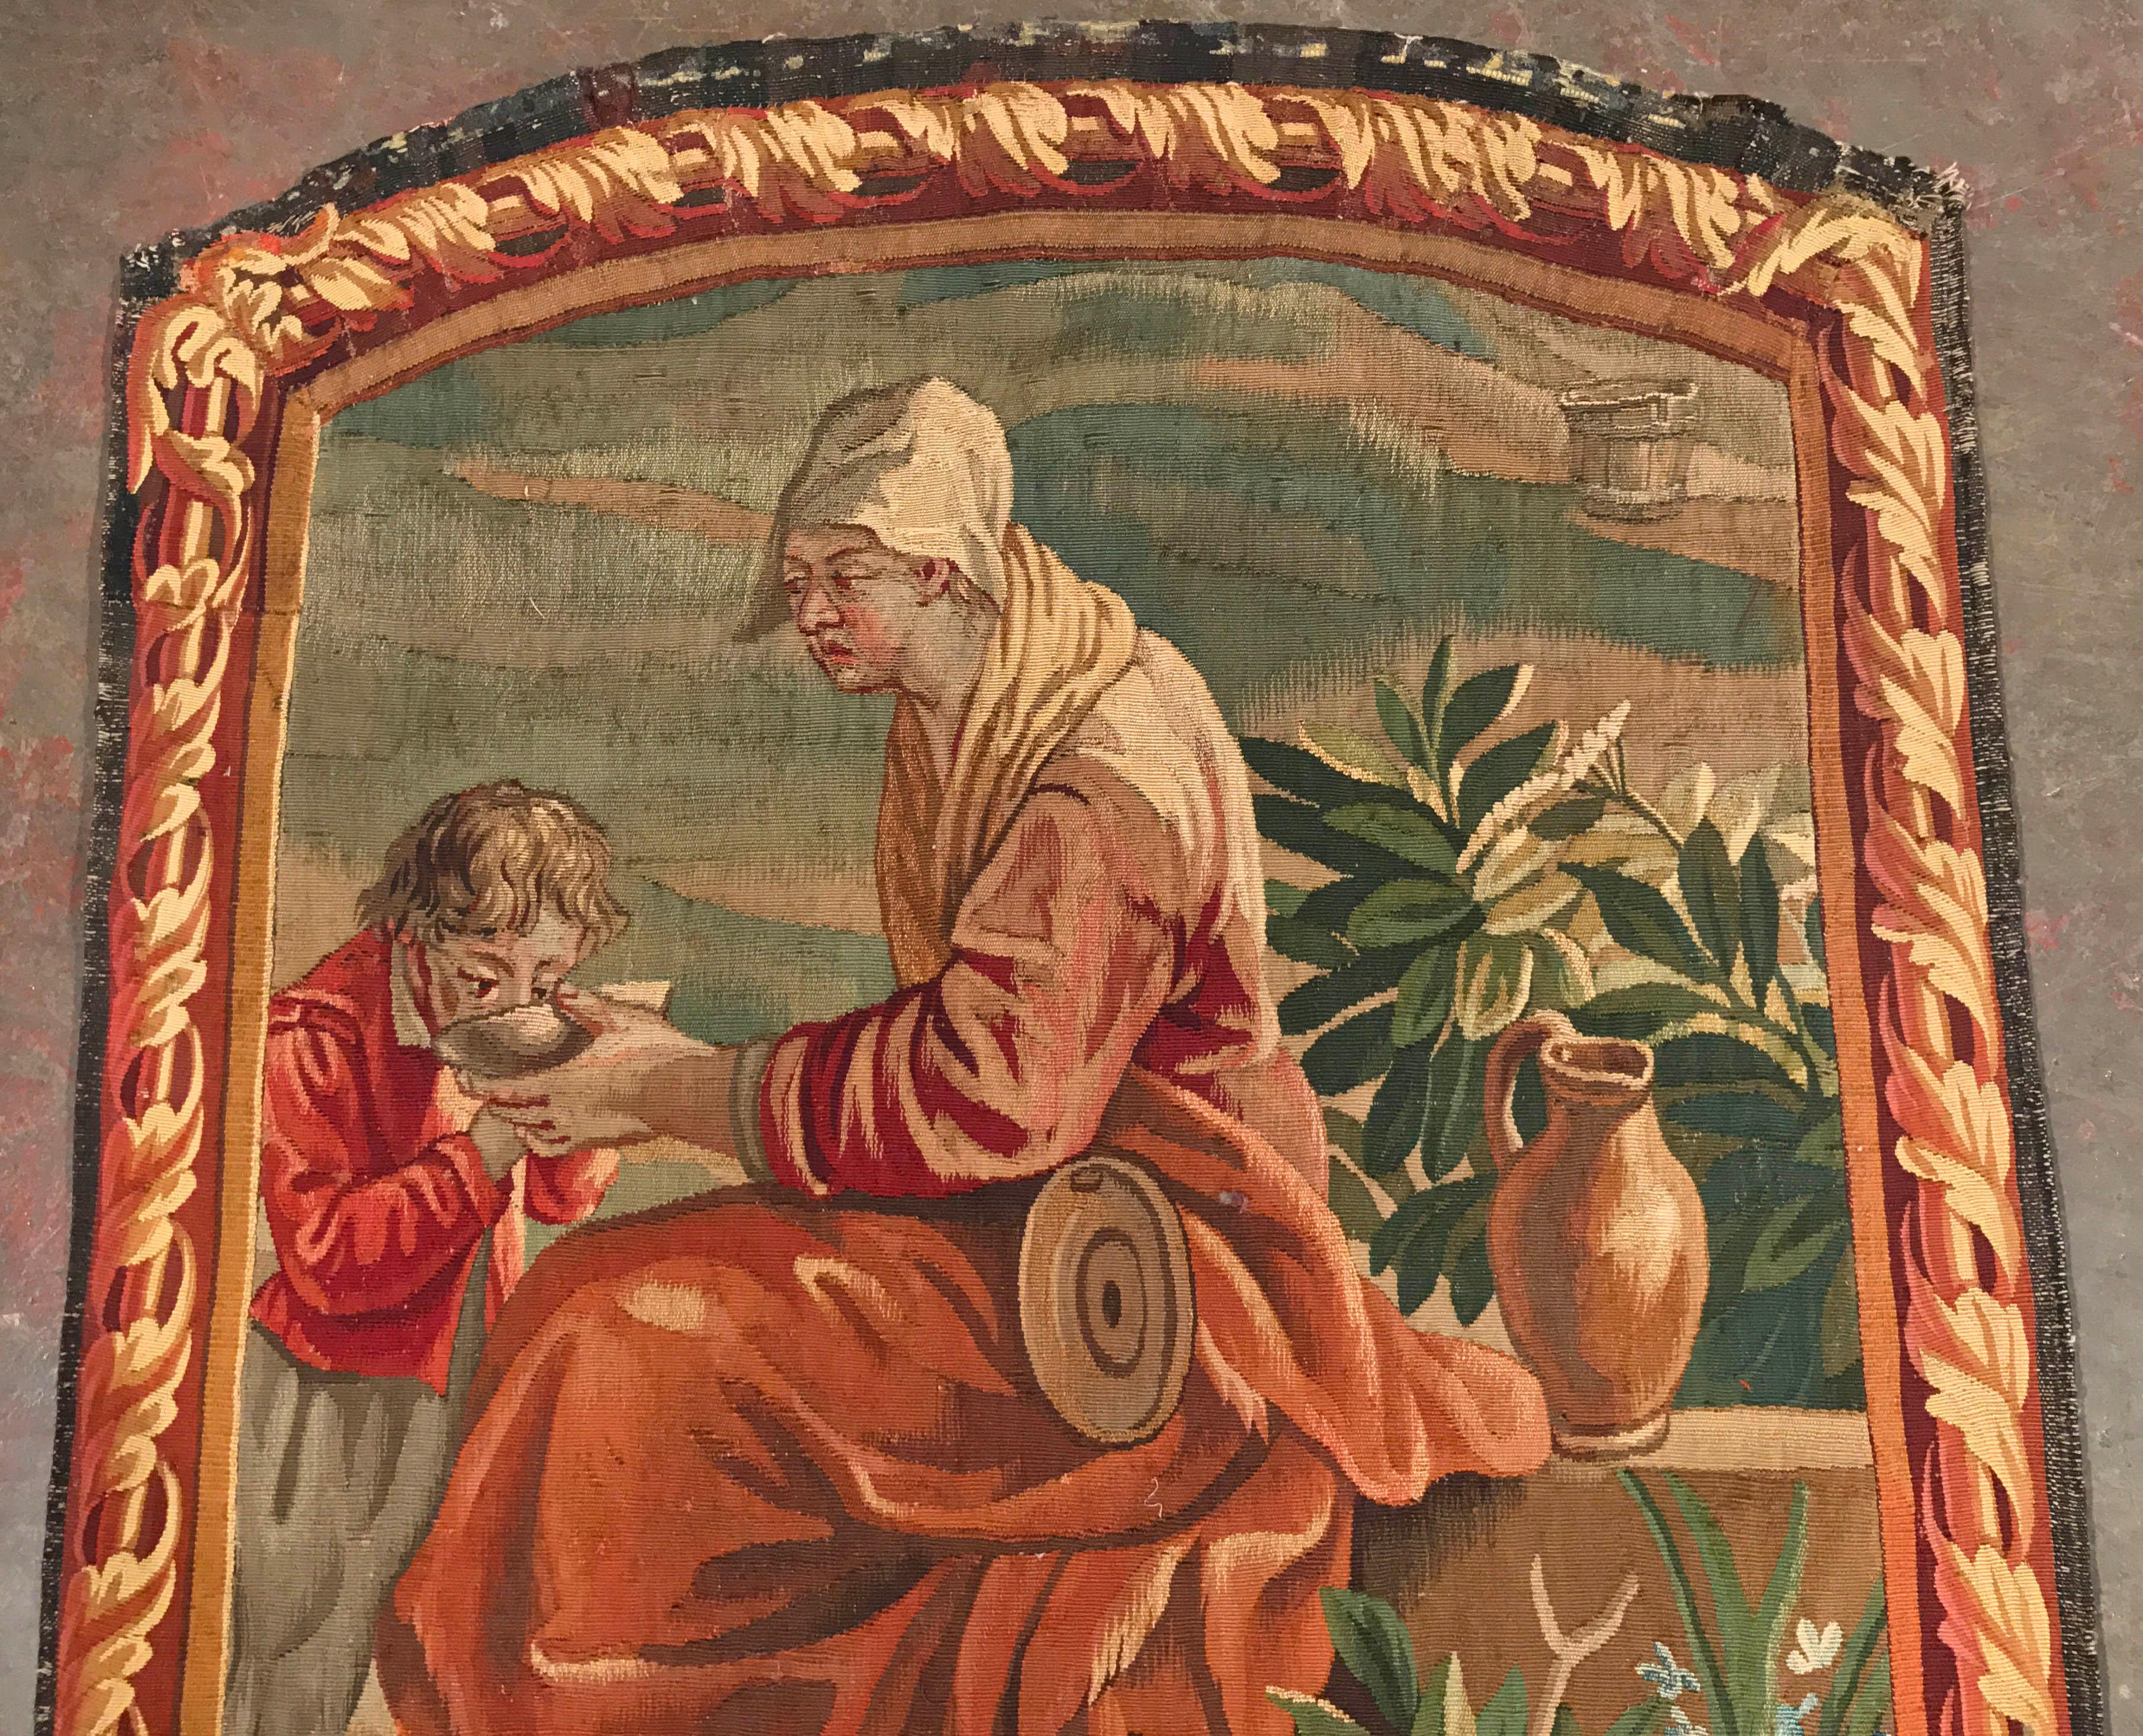 Dieser farbenfrohe, antike Wandteppich wurde um 1820 in Aubusson, Frankreich, handgewebt. Der Wandbehang zeigt eine Frau, die einem Kind eine Schüssel Suppe reicht; das Kunstwerk ist mit einer barocken, gewebten Trompe L'Oeil-Bordüre um die